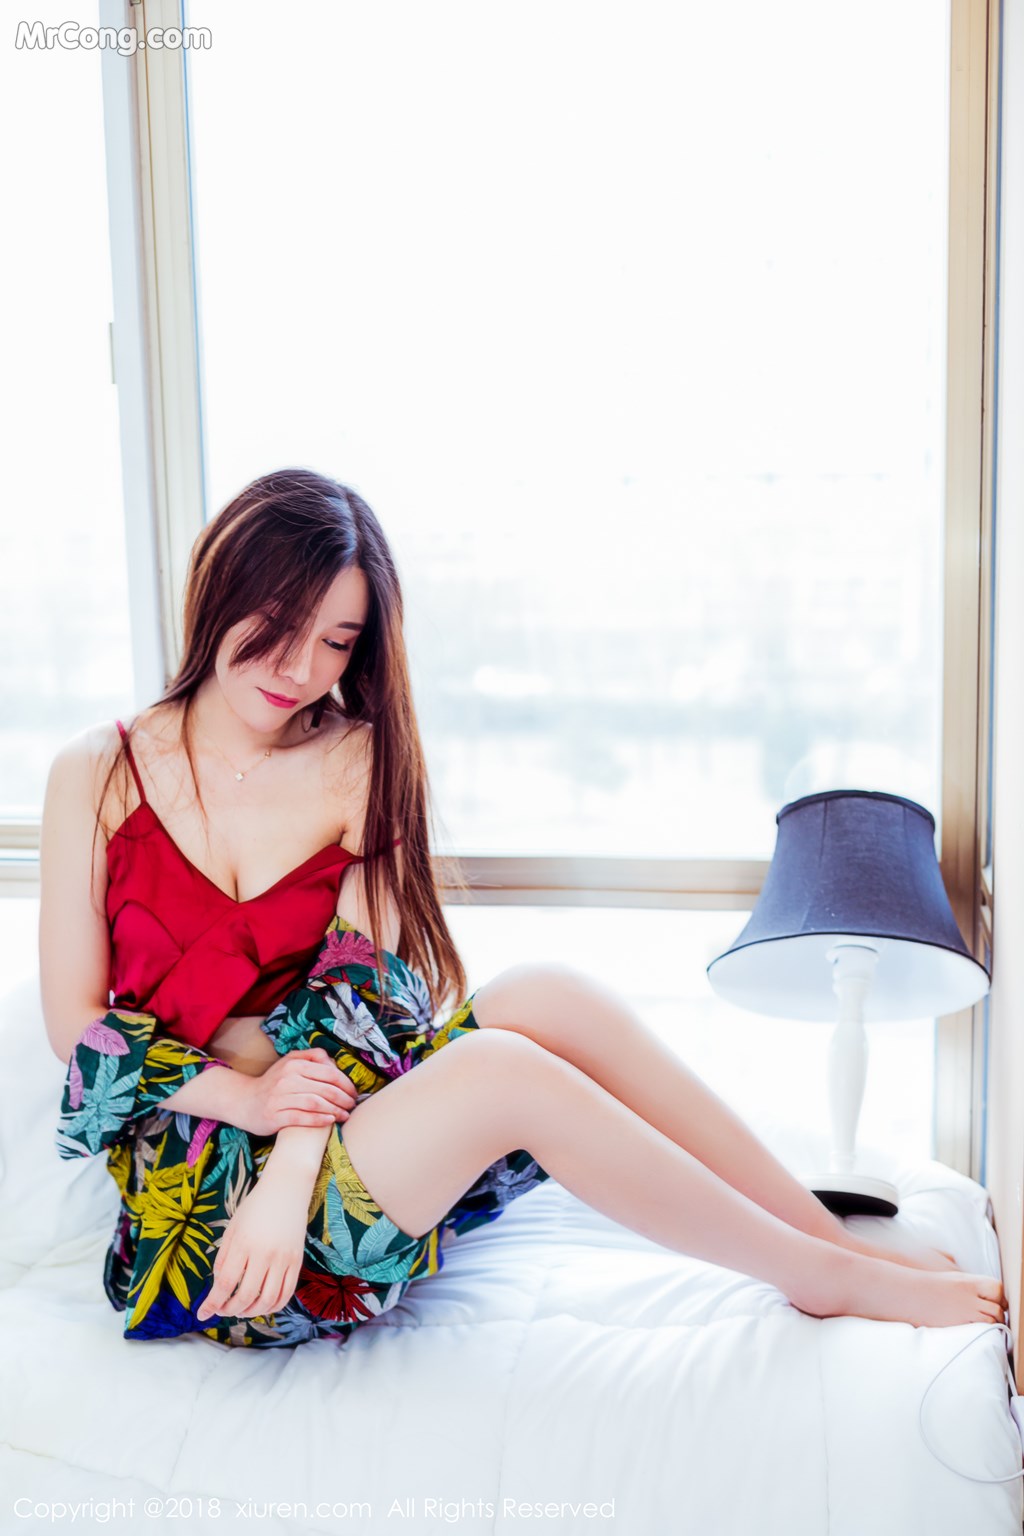 XIUREN No.959: Model Mei Xin Yumi (美 昕 Yumi) (84 photos) photo 1-8